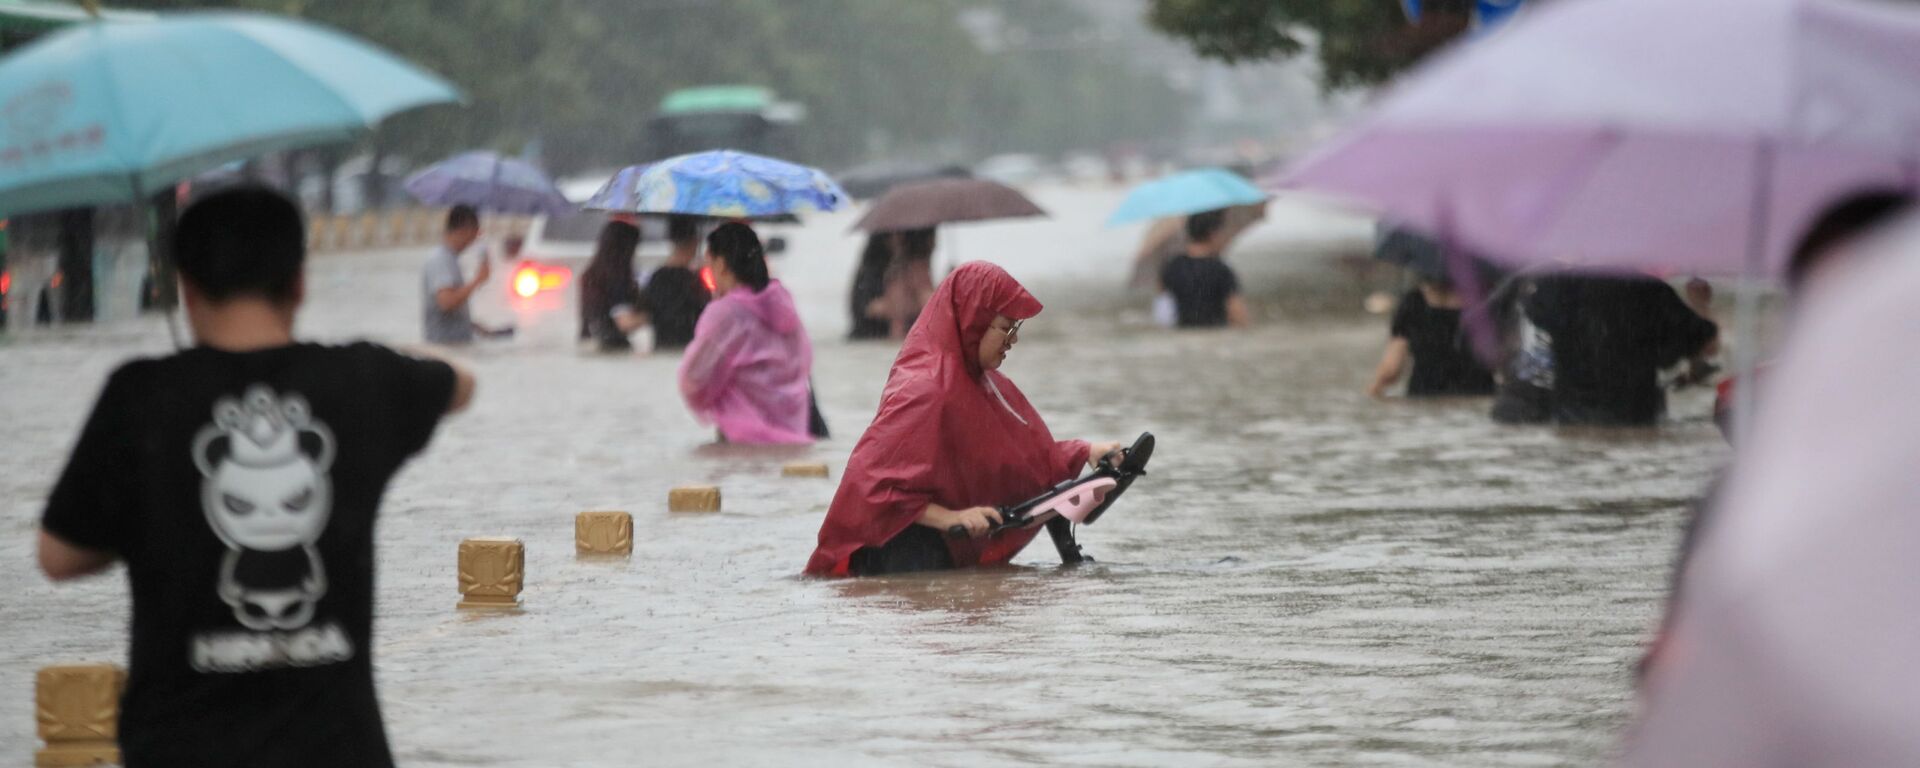 Người dân Trung Quốc trên những đường phố ngập lụt ở thành phố Trinh Châu, tỉnh Hà Nam, Trung Quốc, ngày 20/7/2021 - Sputnik Việt Nam, 1920, 21.07.2021